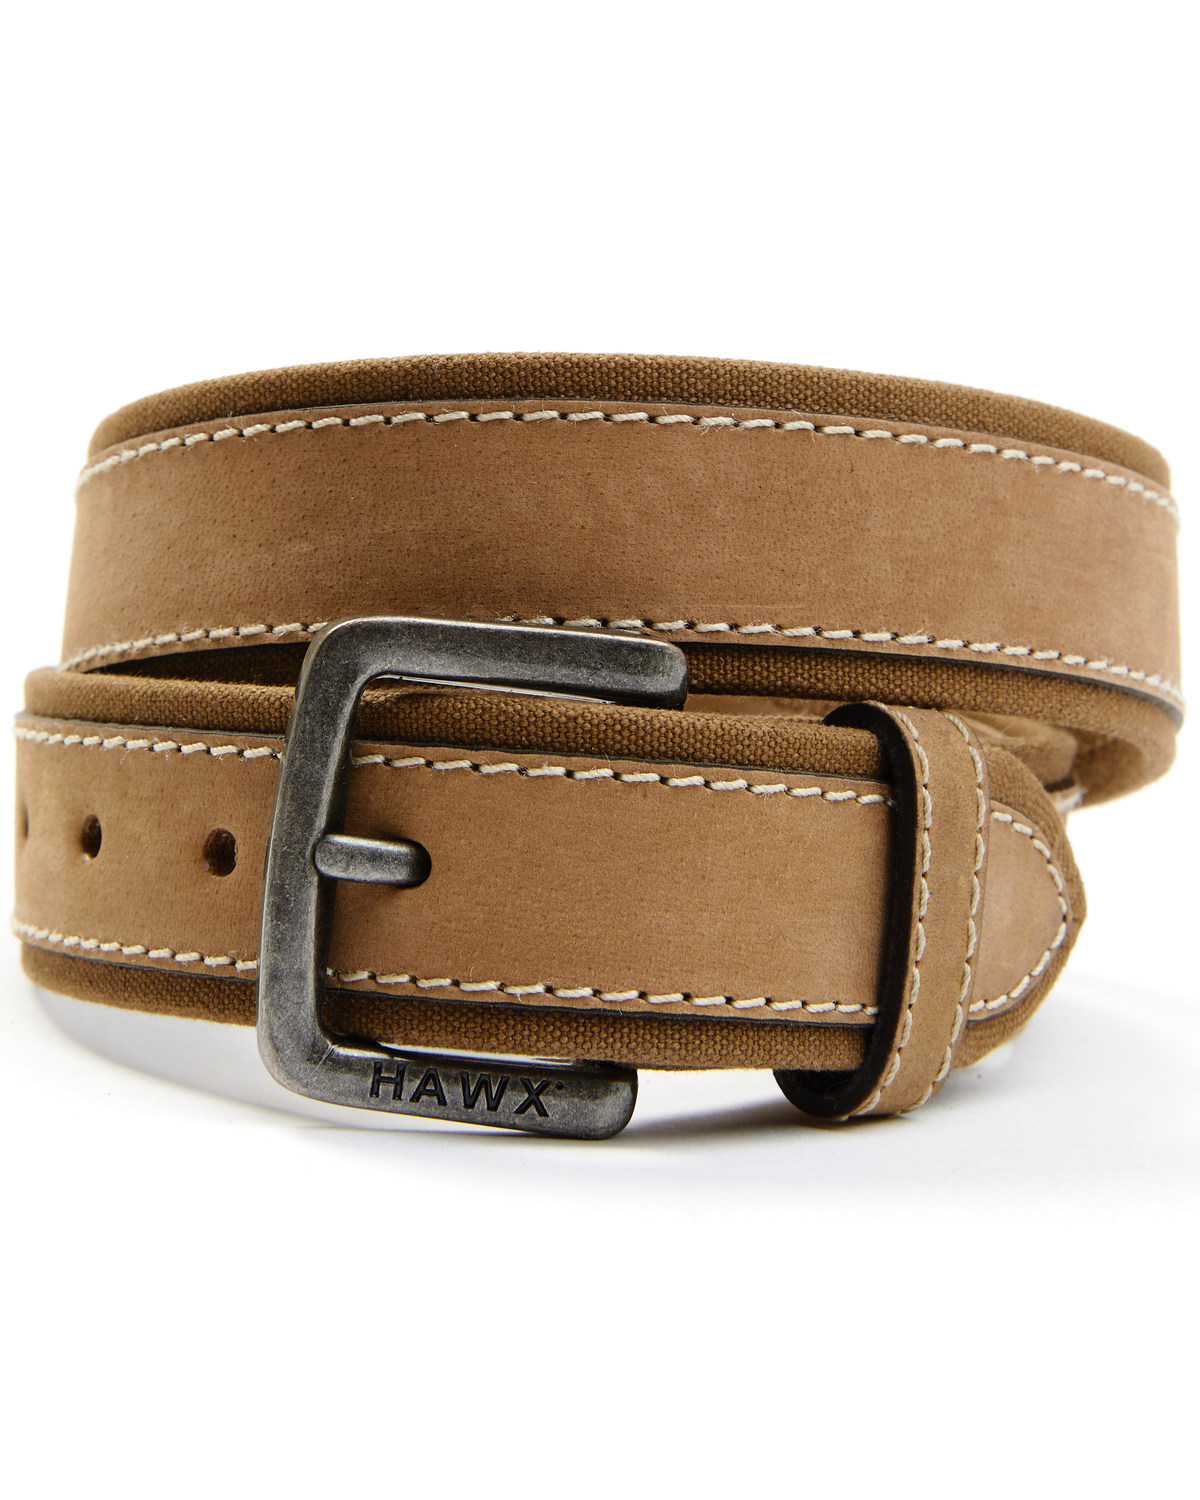 Hawx Men's Buff Brown Leather Belt